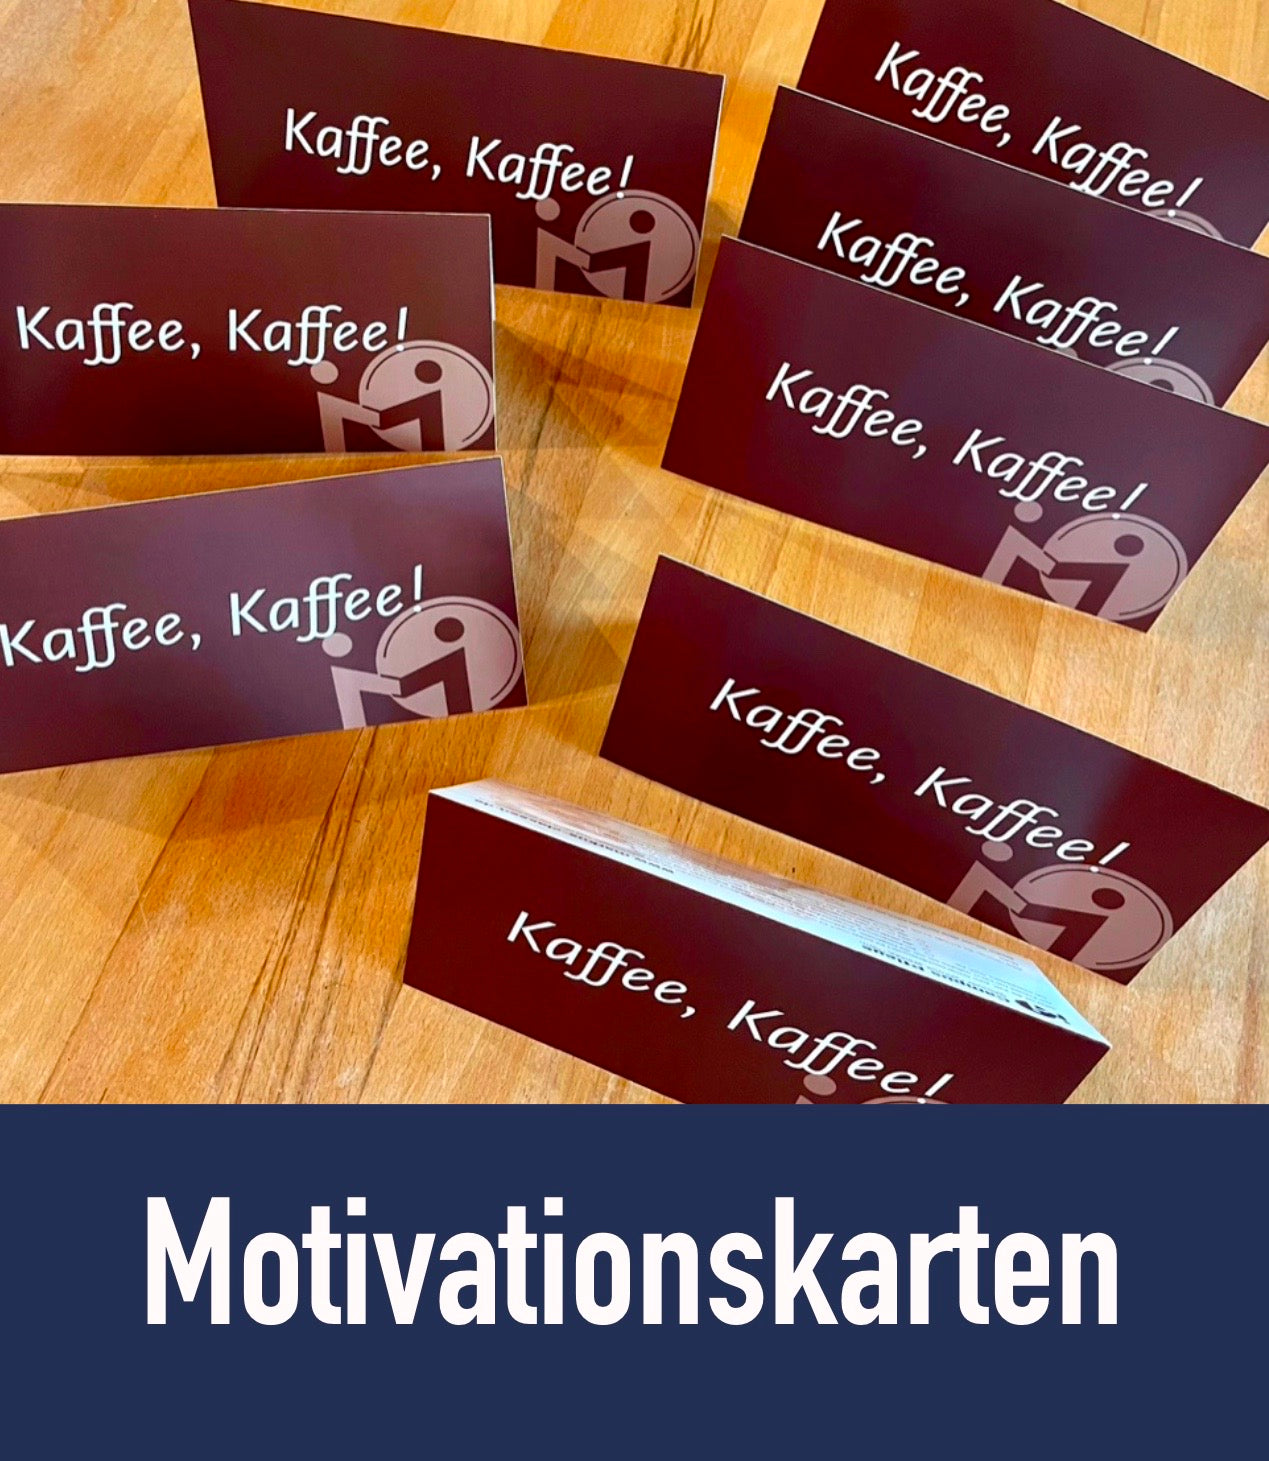 Motivationskarte "Kaffee, Kaffee!"